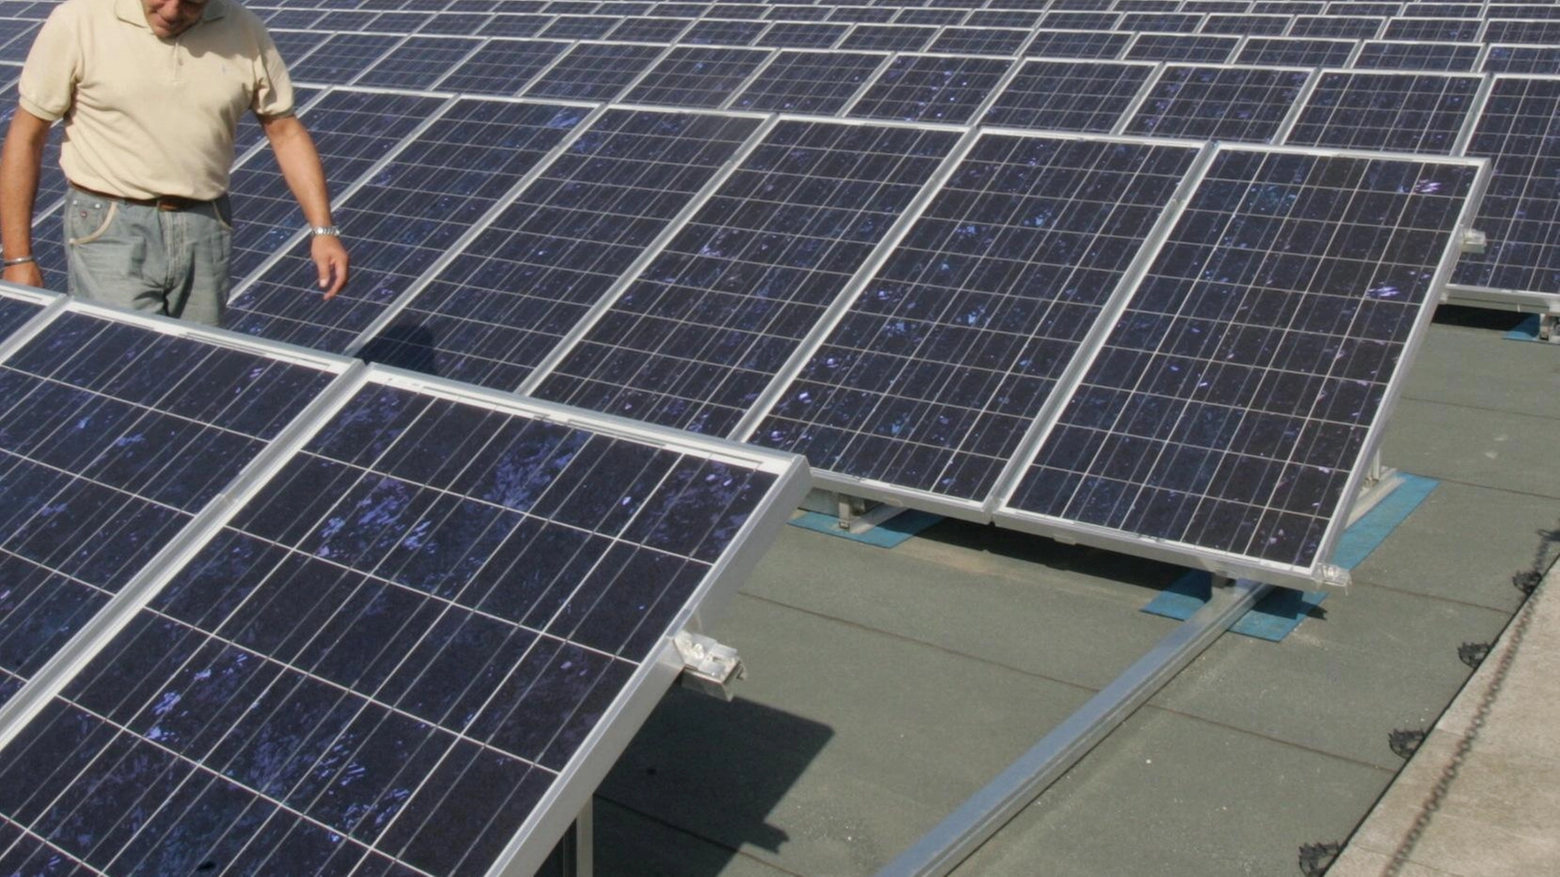 Caso fotovoltaico a Porcari. Arriva il ’no’ definitivo del Comune